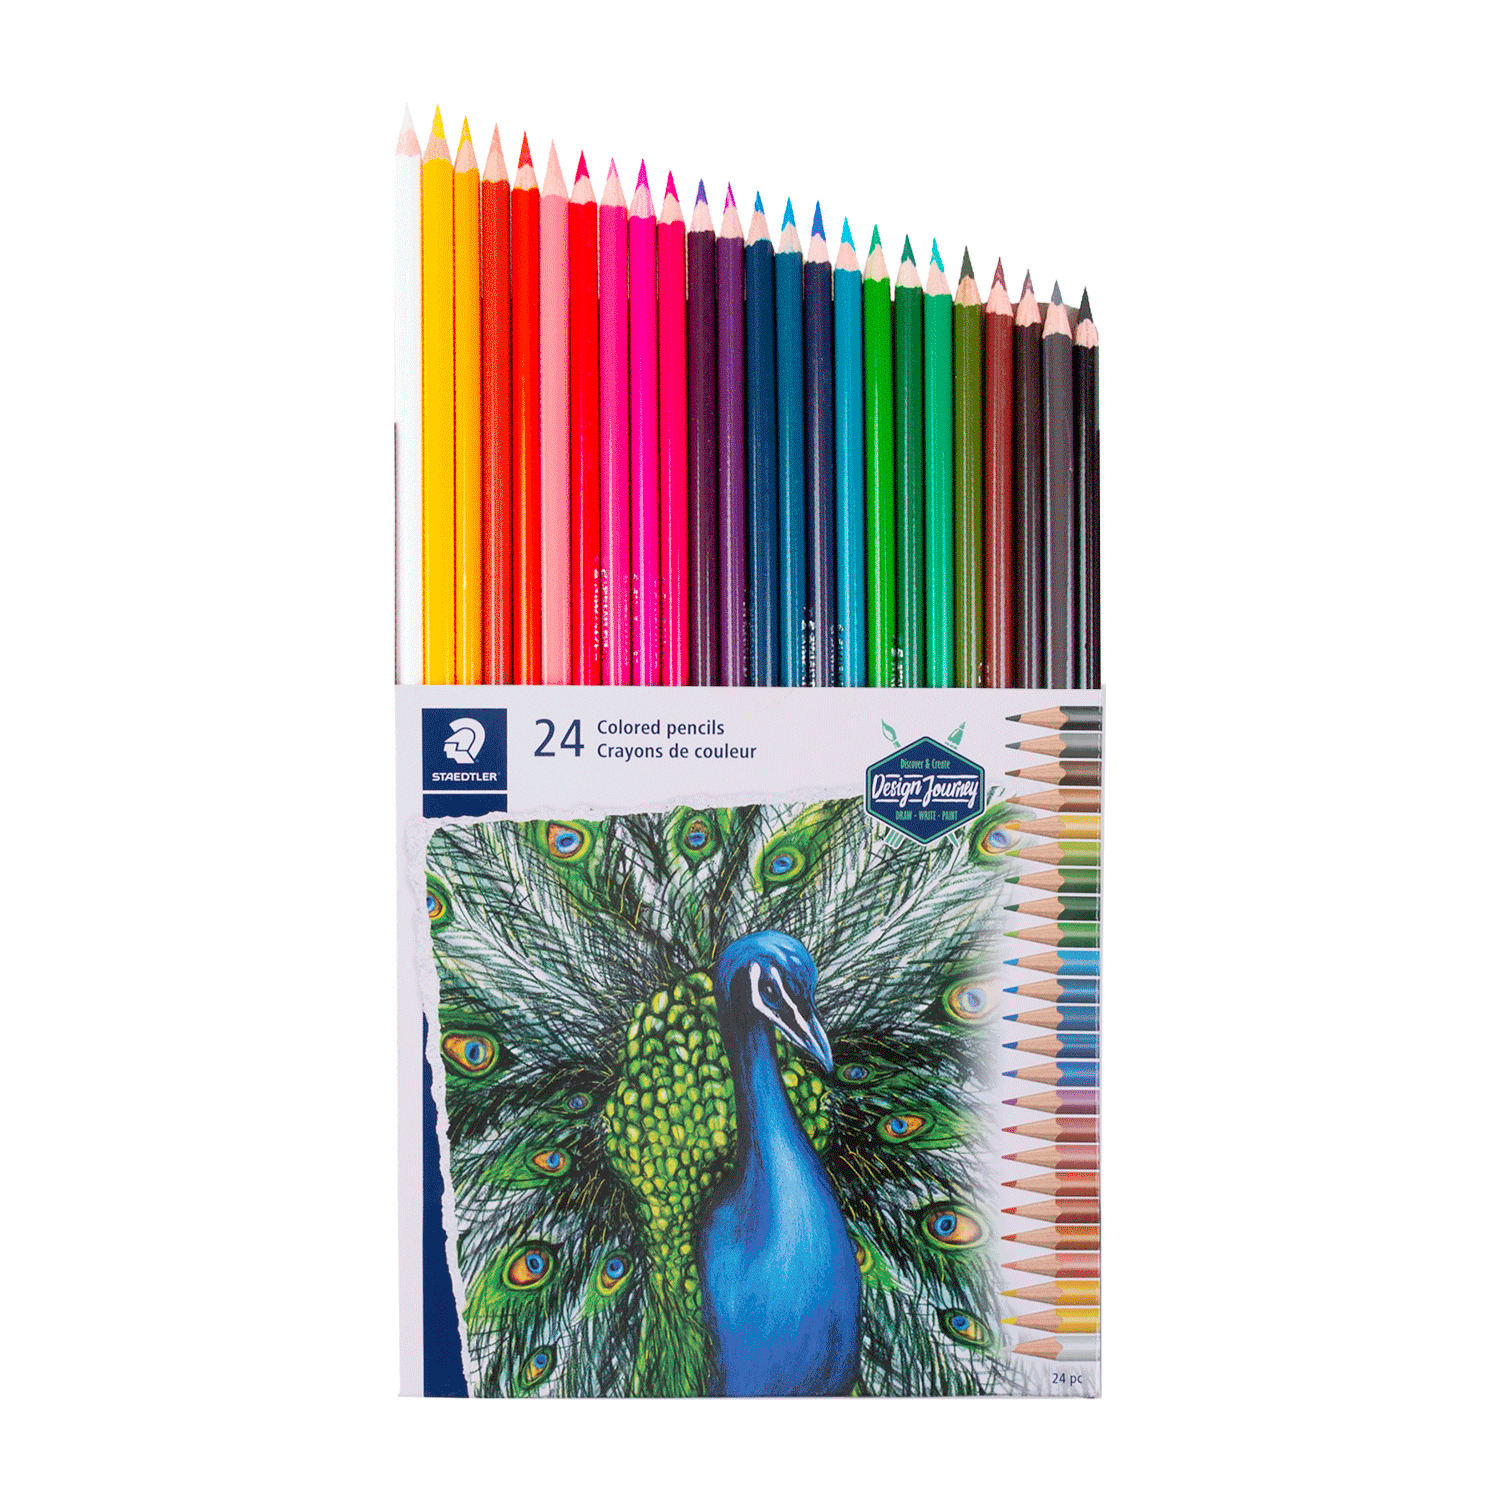 Ens. 24 crayons de couleur sans bois